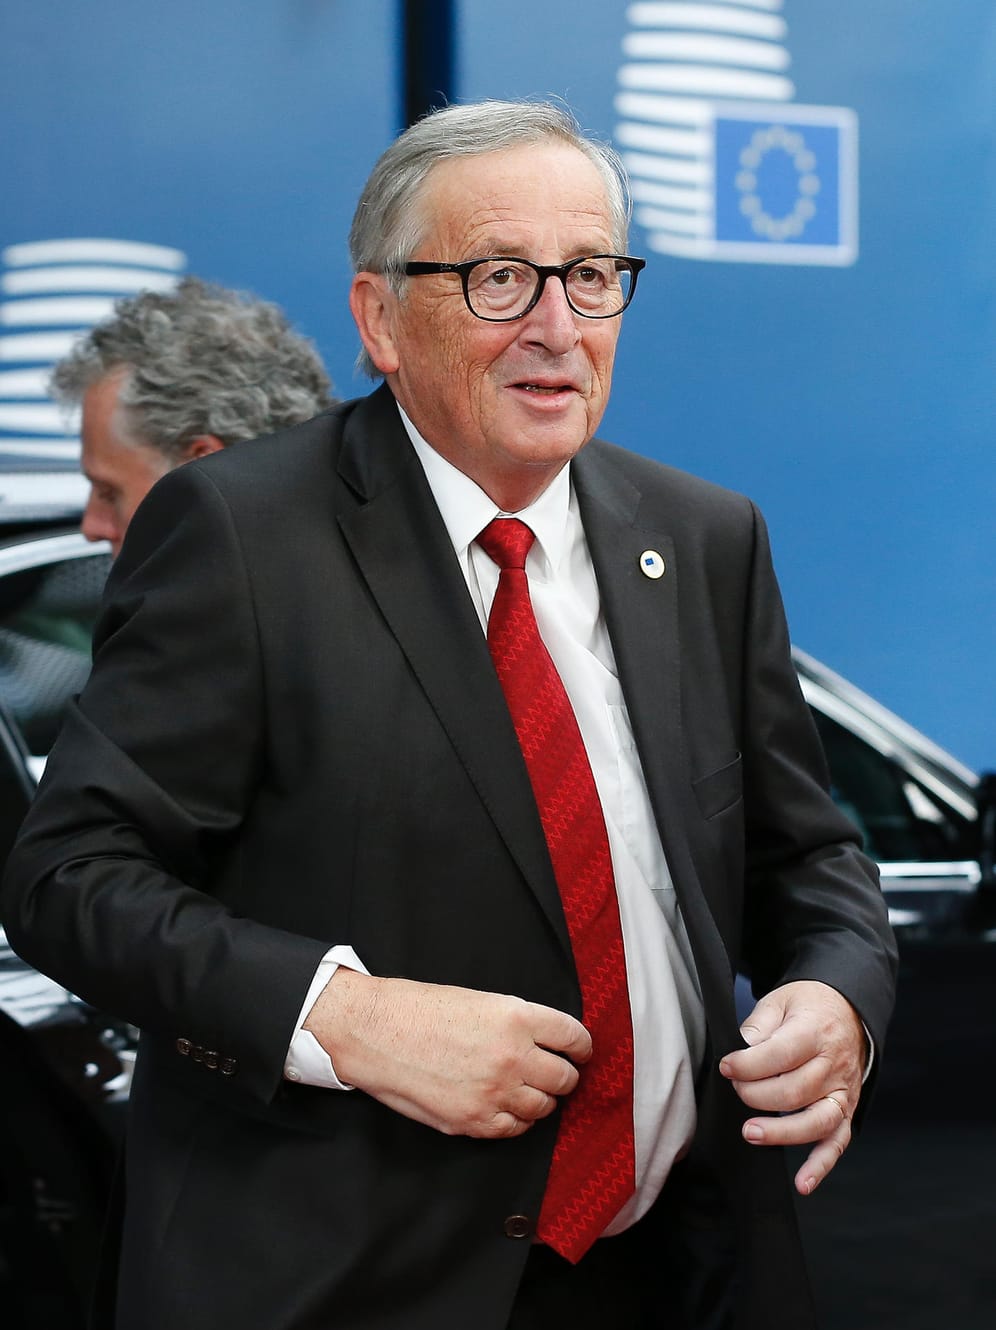 EU-Kommissionspräsident Jean-Claude Juncker warnte: Wenn es in Westminister keine Zustimmung gebe, "dann sind wir in einer extrem komplizierten Situation." Eine erneute Verschiebung des für den 31. Oktober vorgesehenen Brexit-Datums hält Juncker nicht für nötig: "Wir sind der Meinung, dass man angesichts der Qualität des Deals keine Verlängerung braucht."